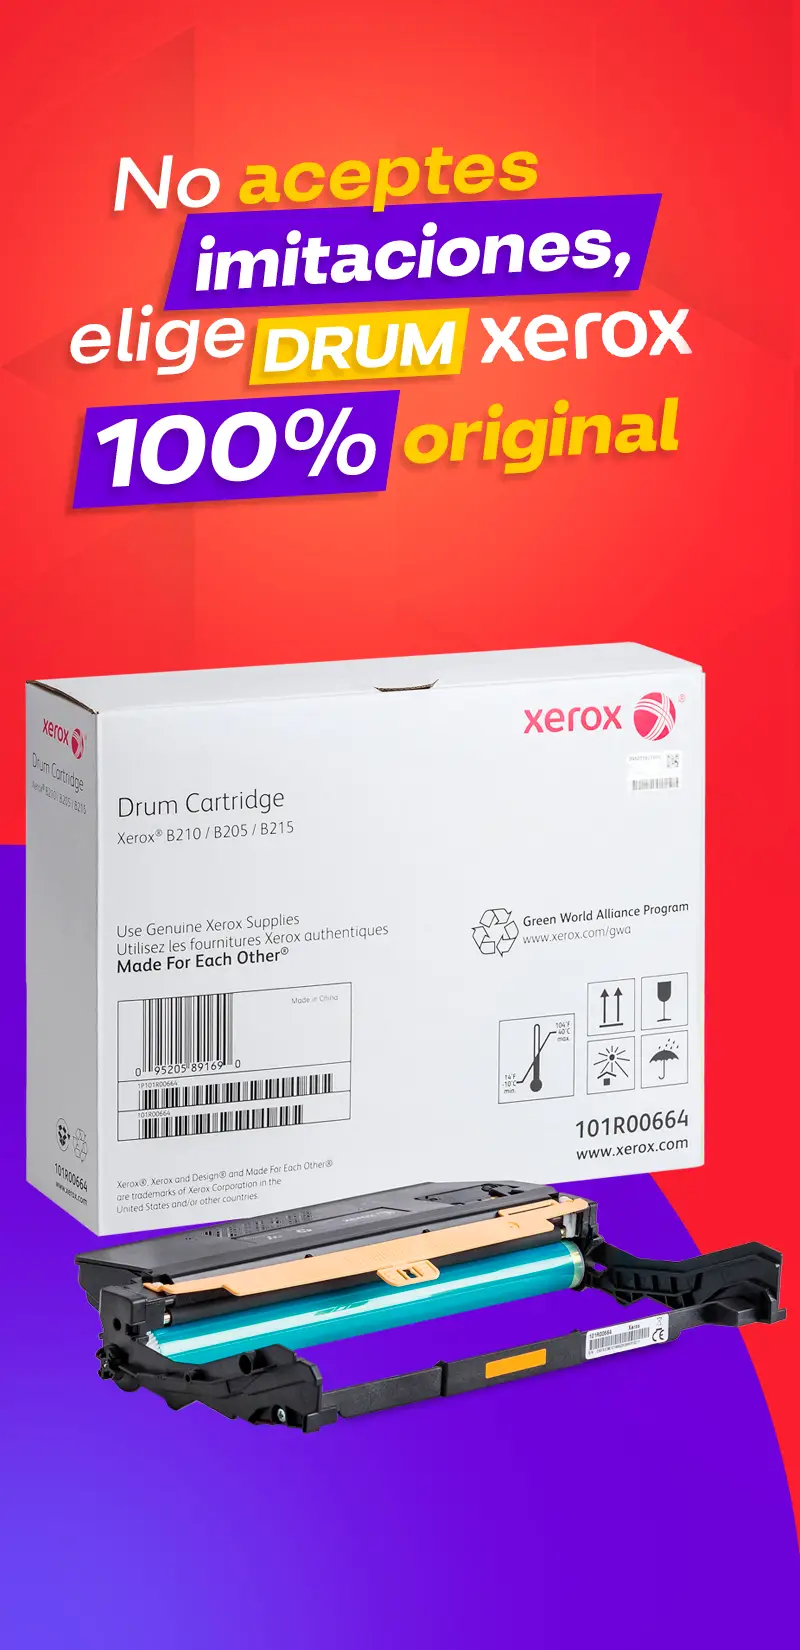 Drum Xerox Originalidad Garantizada en cada Pagina 📄